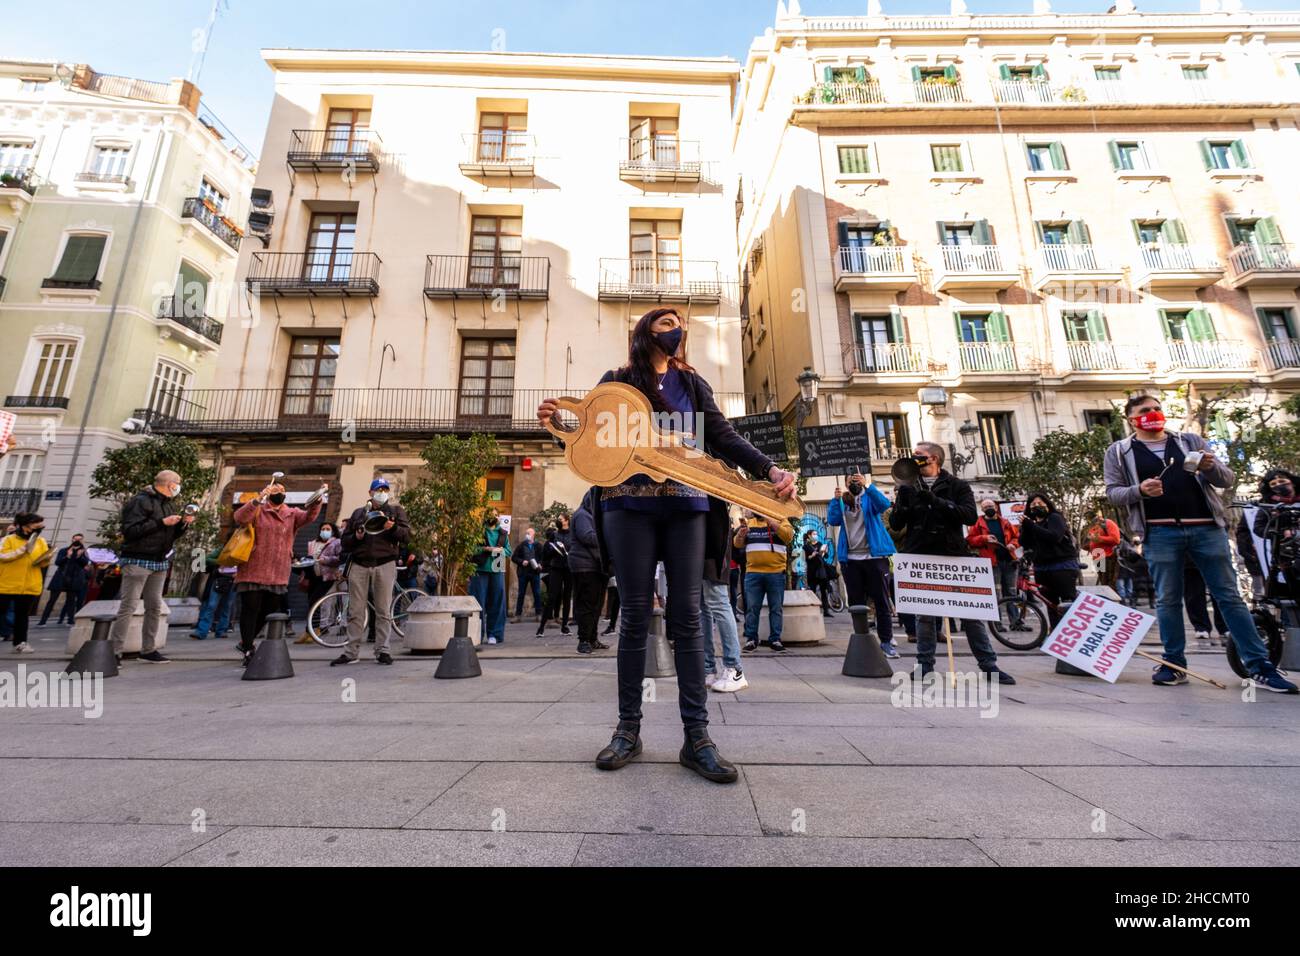 Valence, Espagne; 21 janvier 2021: Des manifestants contre les mesures prises contre Covid contre le secteur de l'accueil par le gouvernement local. Banque D'Images